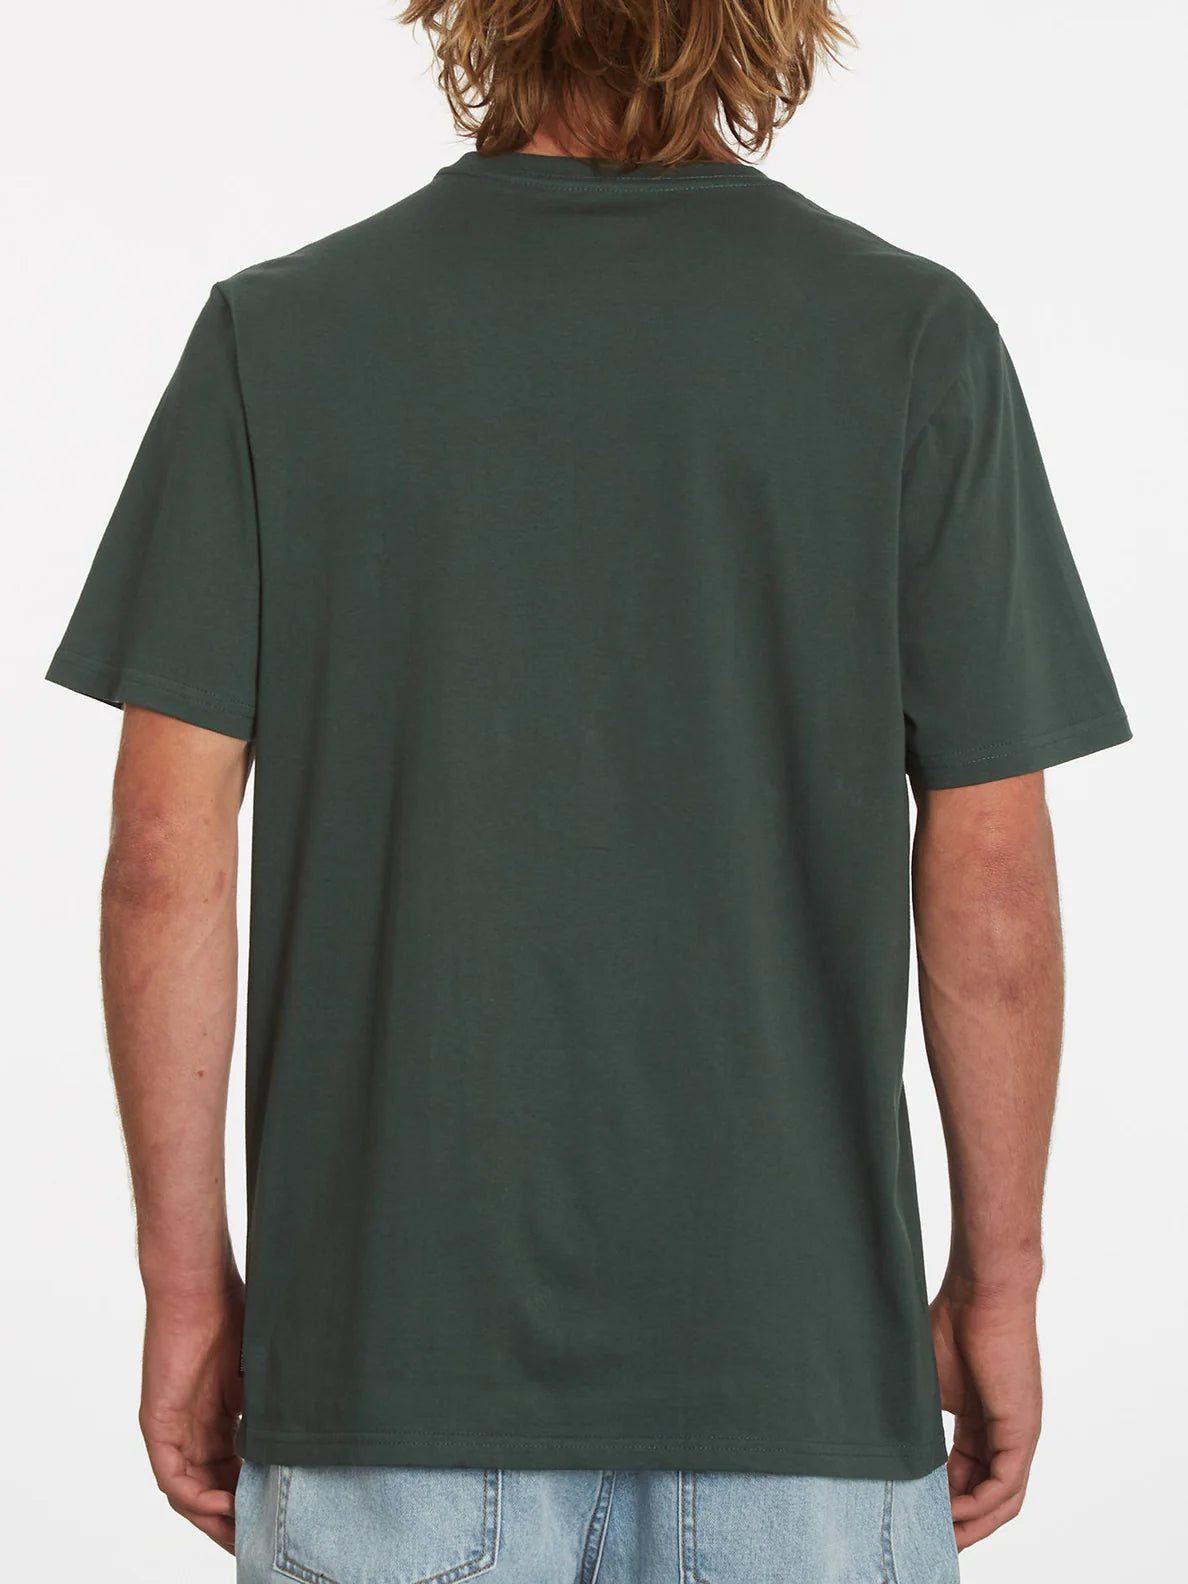 Camiseta Volcom Vaderetro 2 Cedar Green